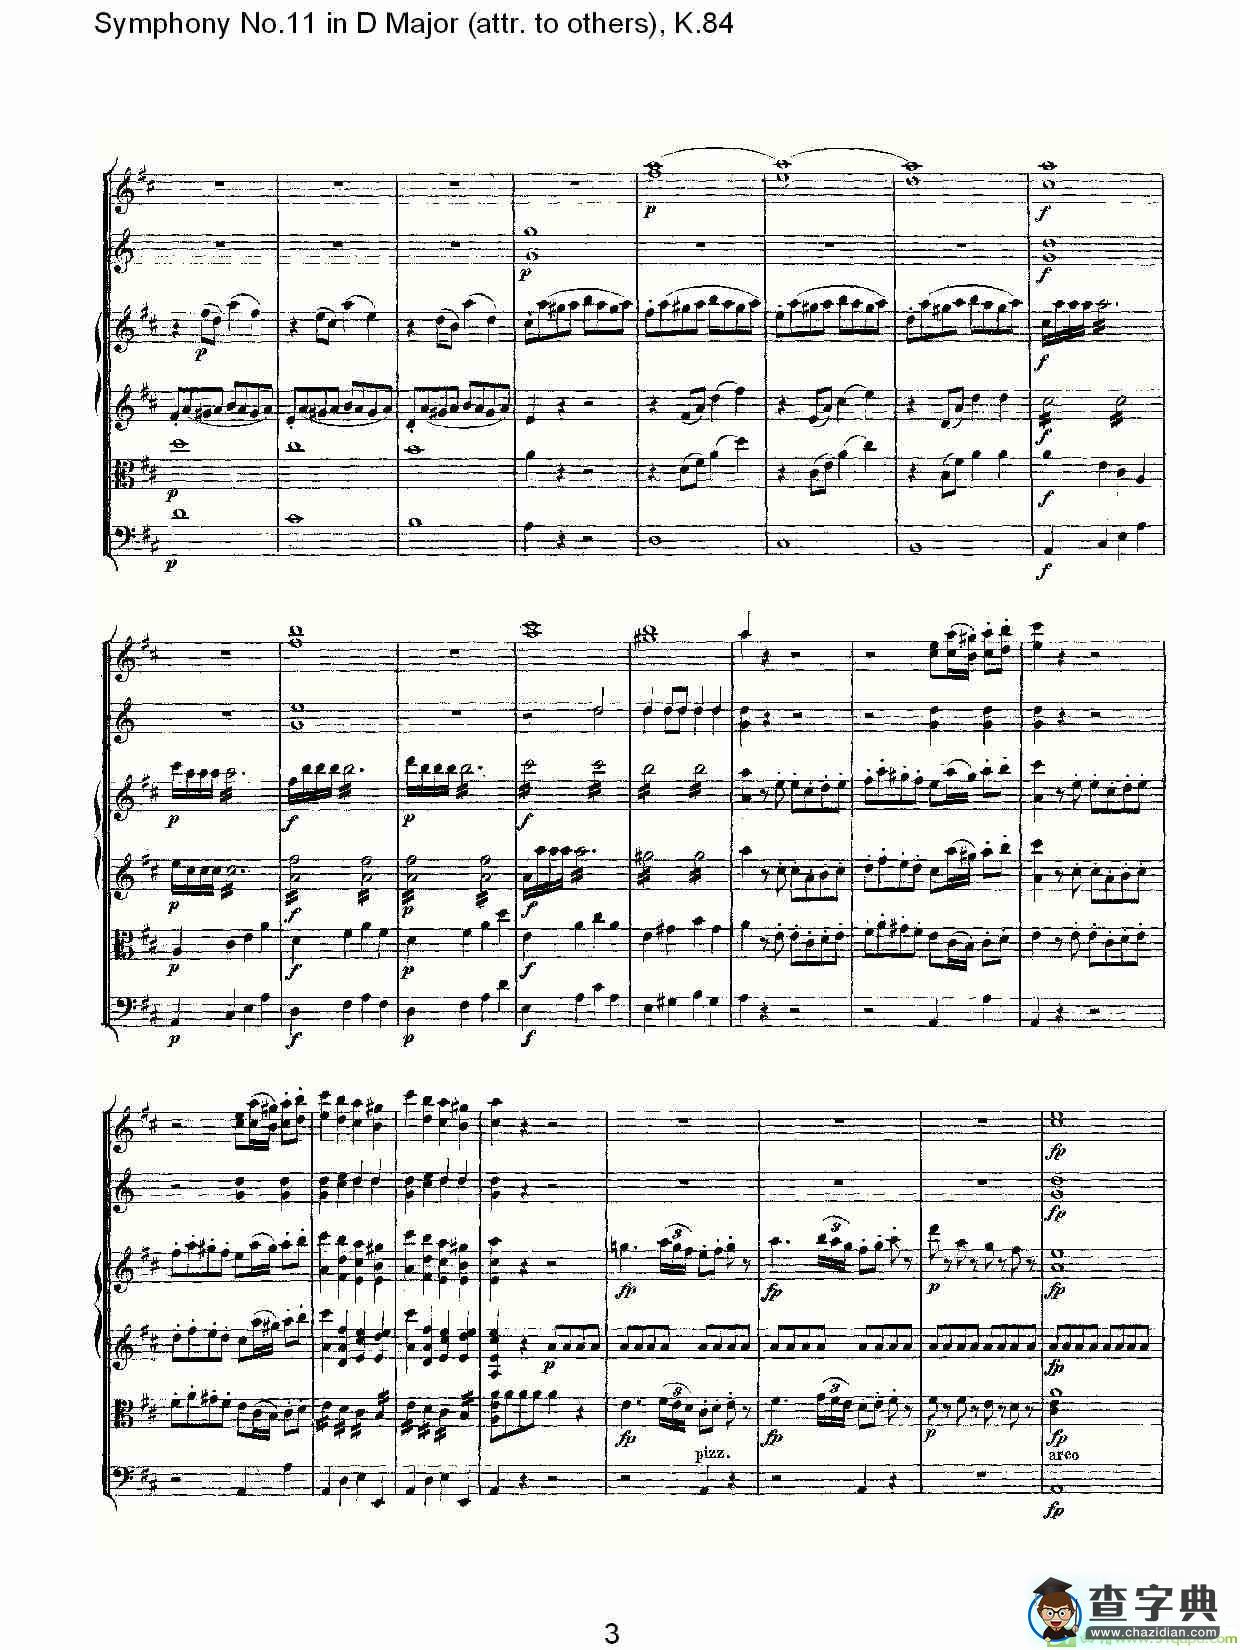 Symphony No.11 in D Major简谱